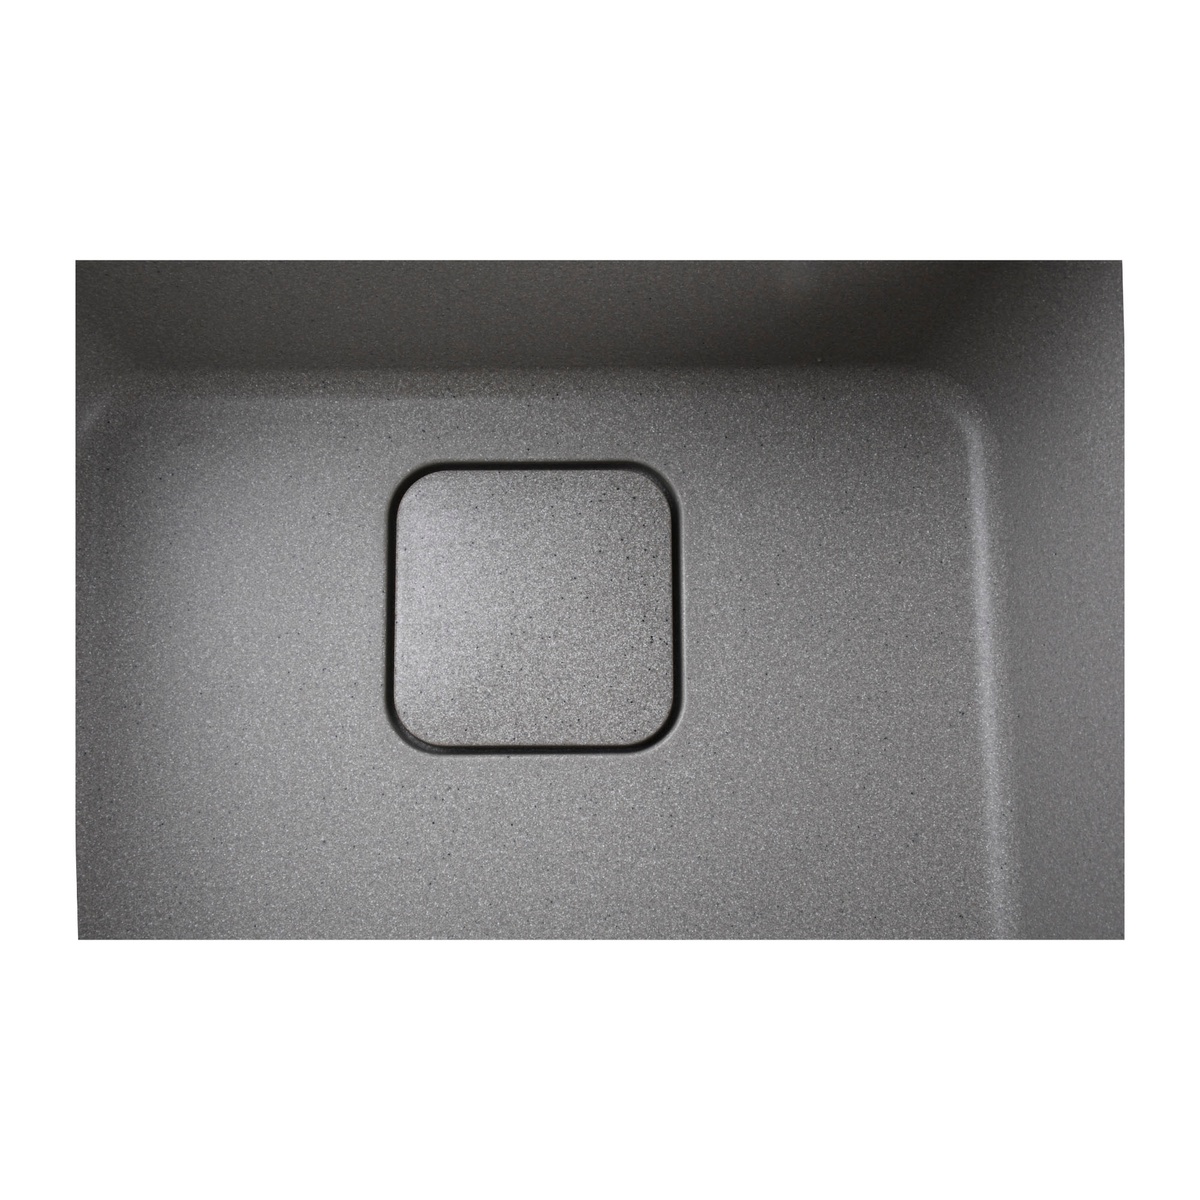 Раковина на кухню керамическая квадратная GLOBUS LUX BARBORA 510мм x 510мм серый без сифона 000013966